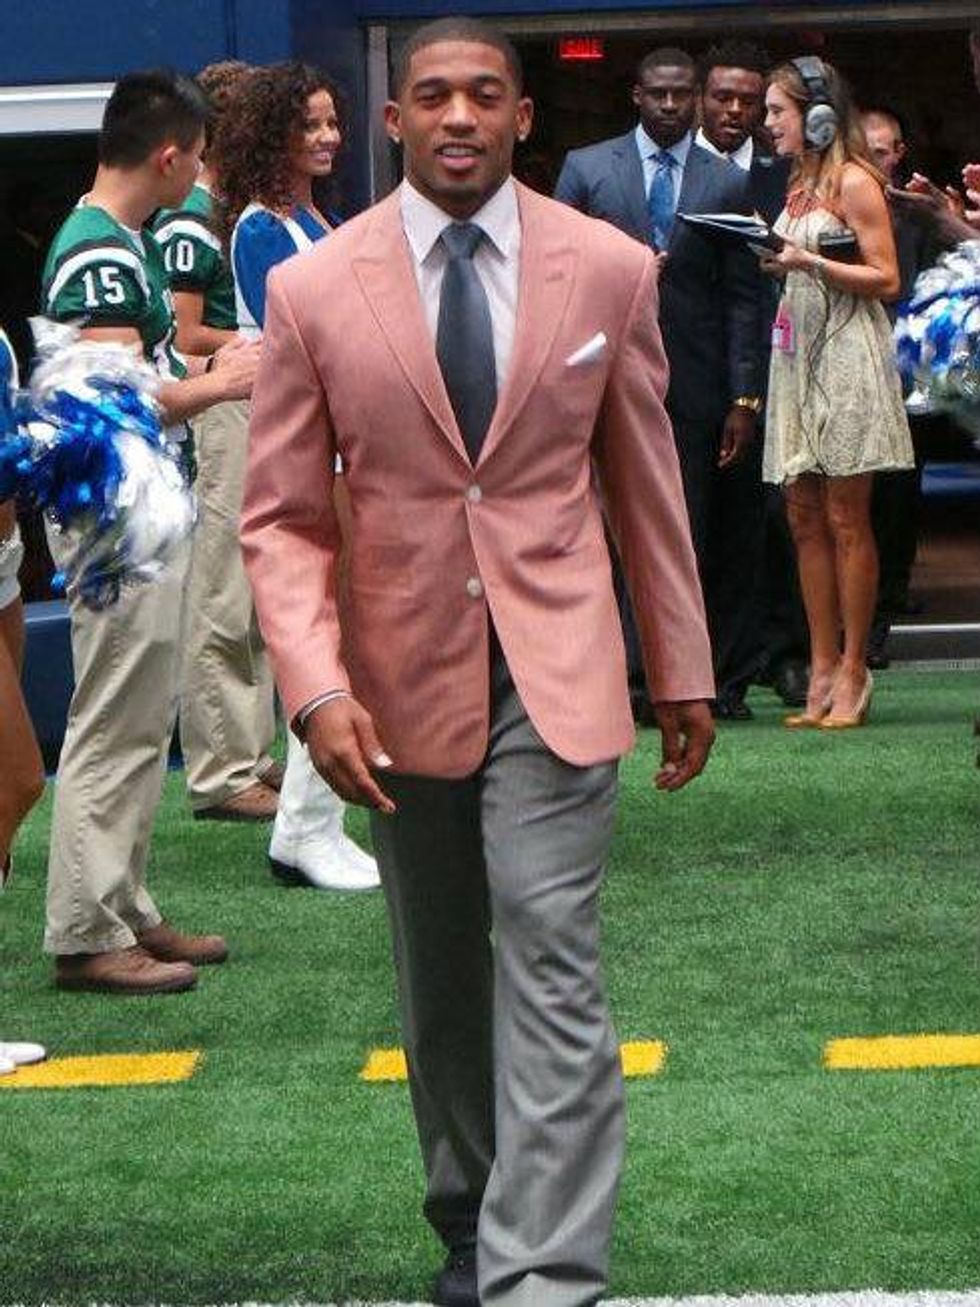 Hot men out of uniform: 10 best dressed Dallas Cowboys